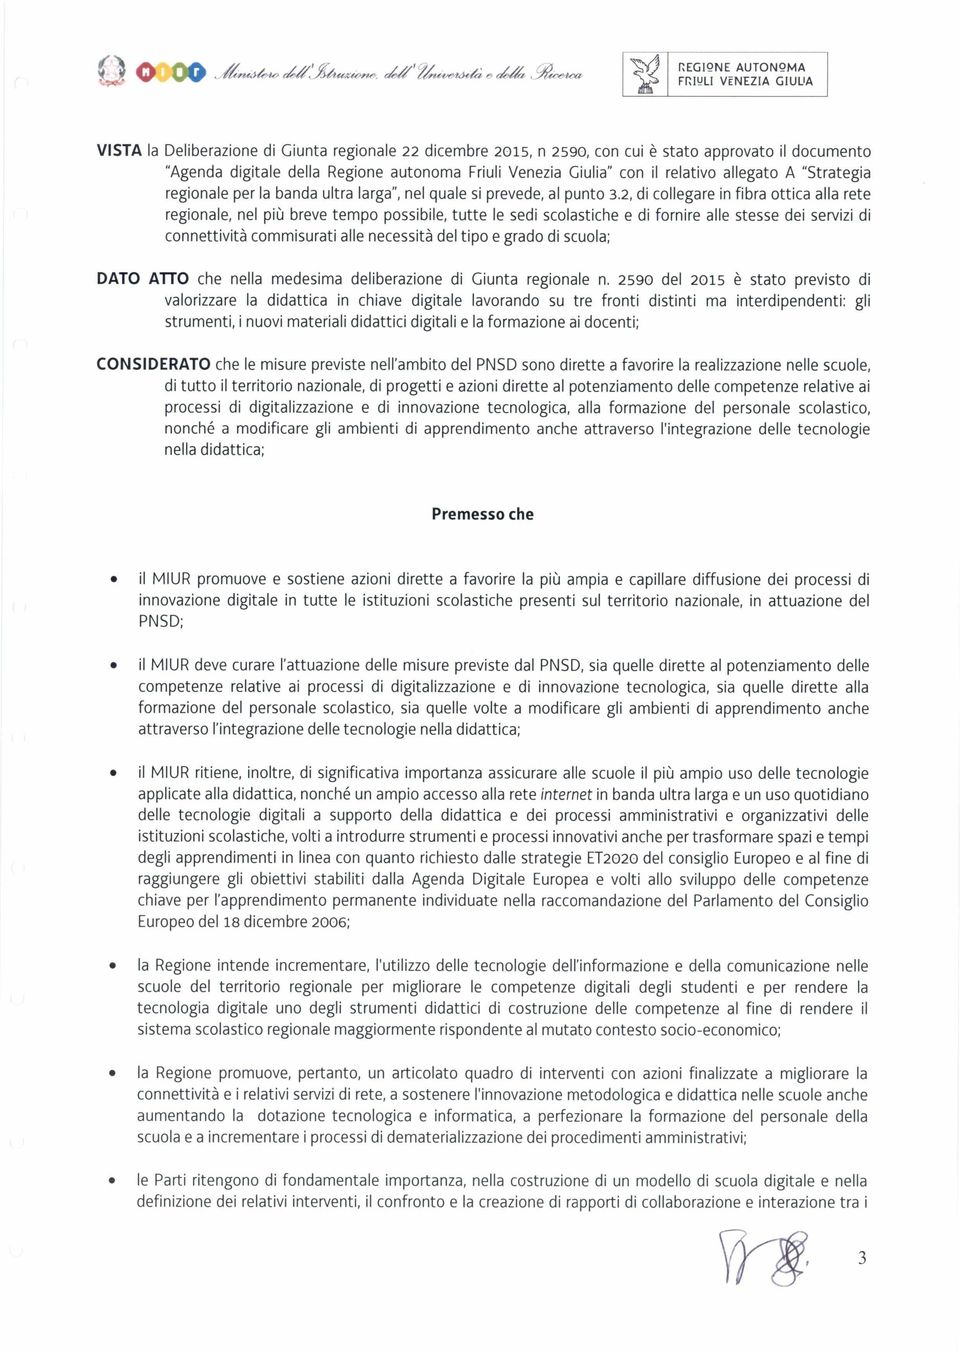 Friuli Venezia Giulia" con il relativo allegato A "Strategia regionale per la banda ultra larga", nel quale si prevede, al punto 3.